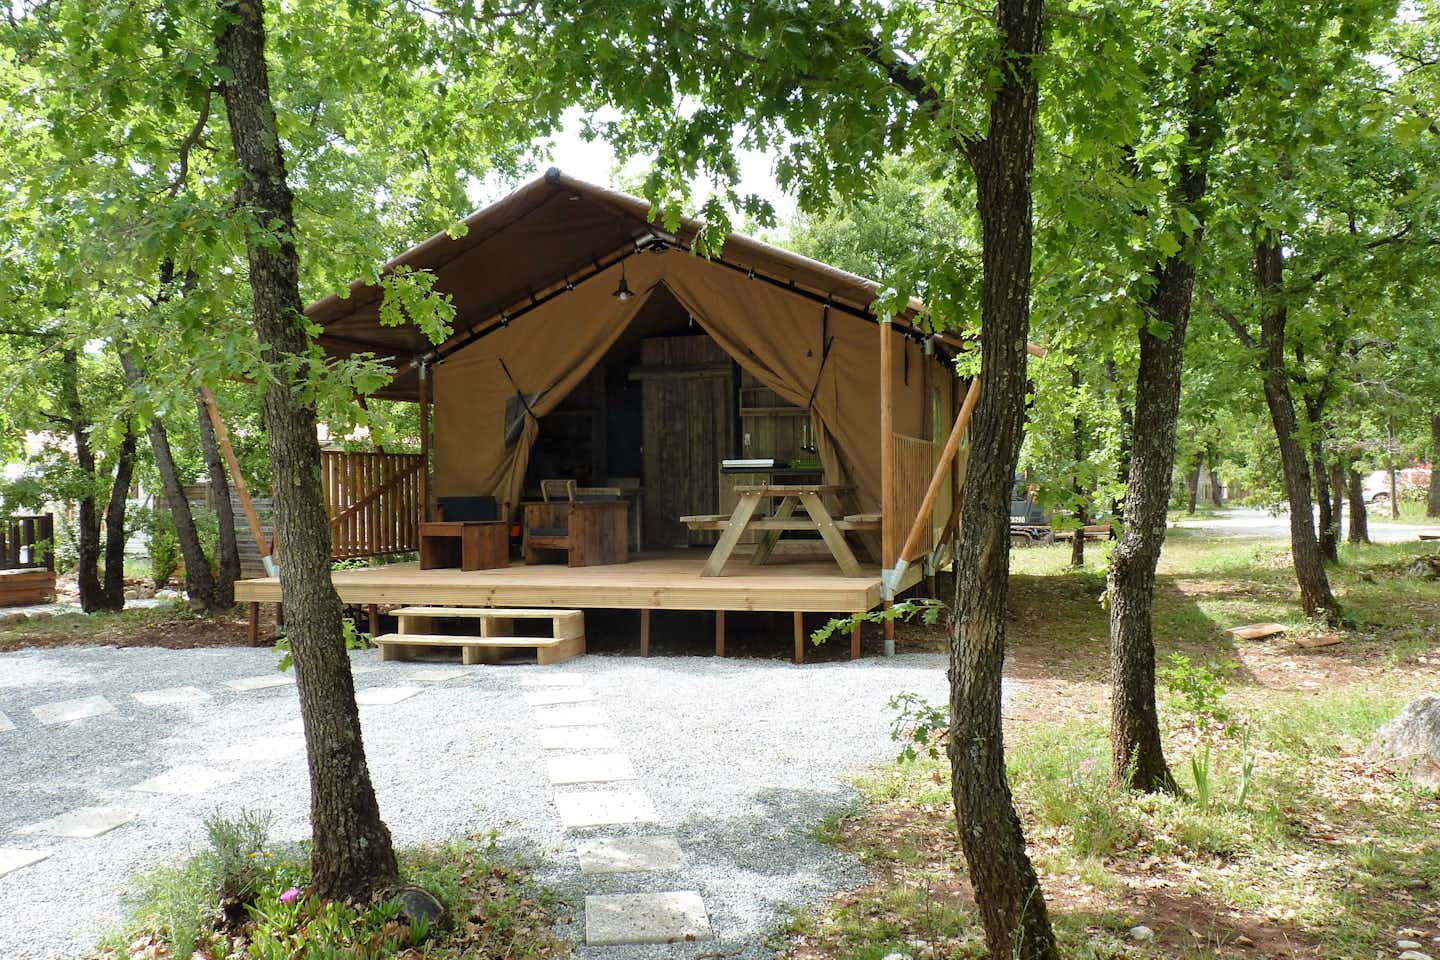 Caravaning Le Jas du Moine - Glampingzelt auf dem Campingplatz mit überdachter Veranda und Sitzgelegenheiten zwischen Bäumen